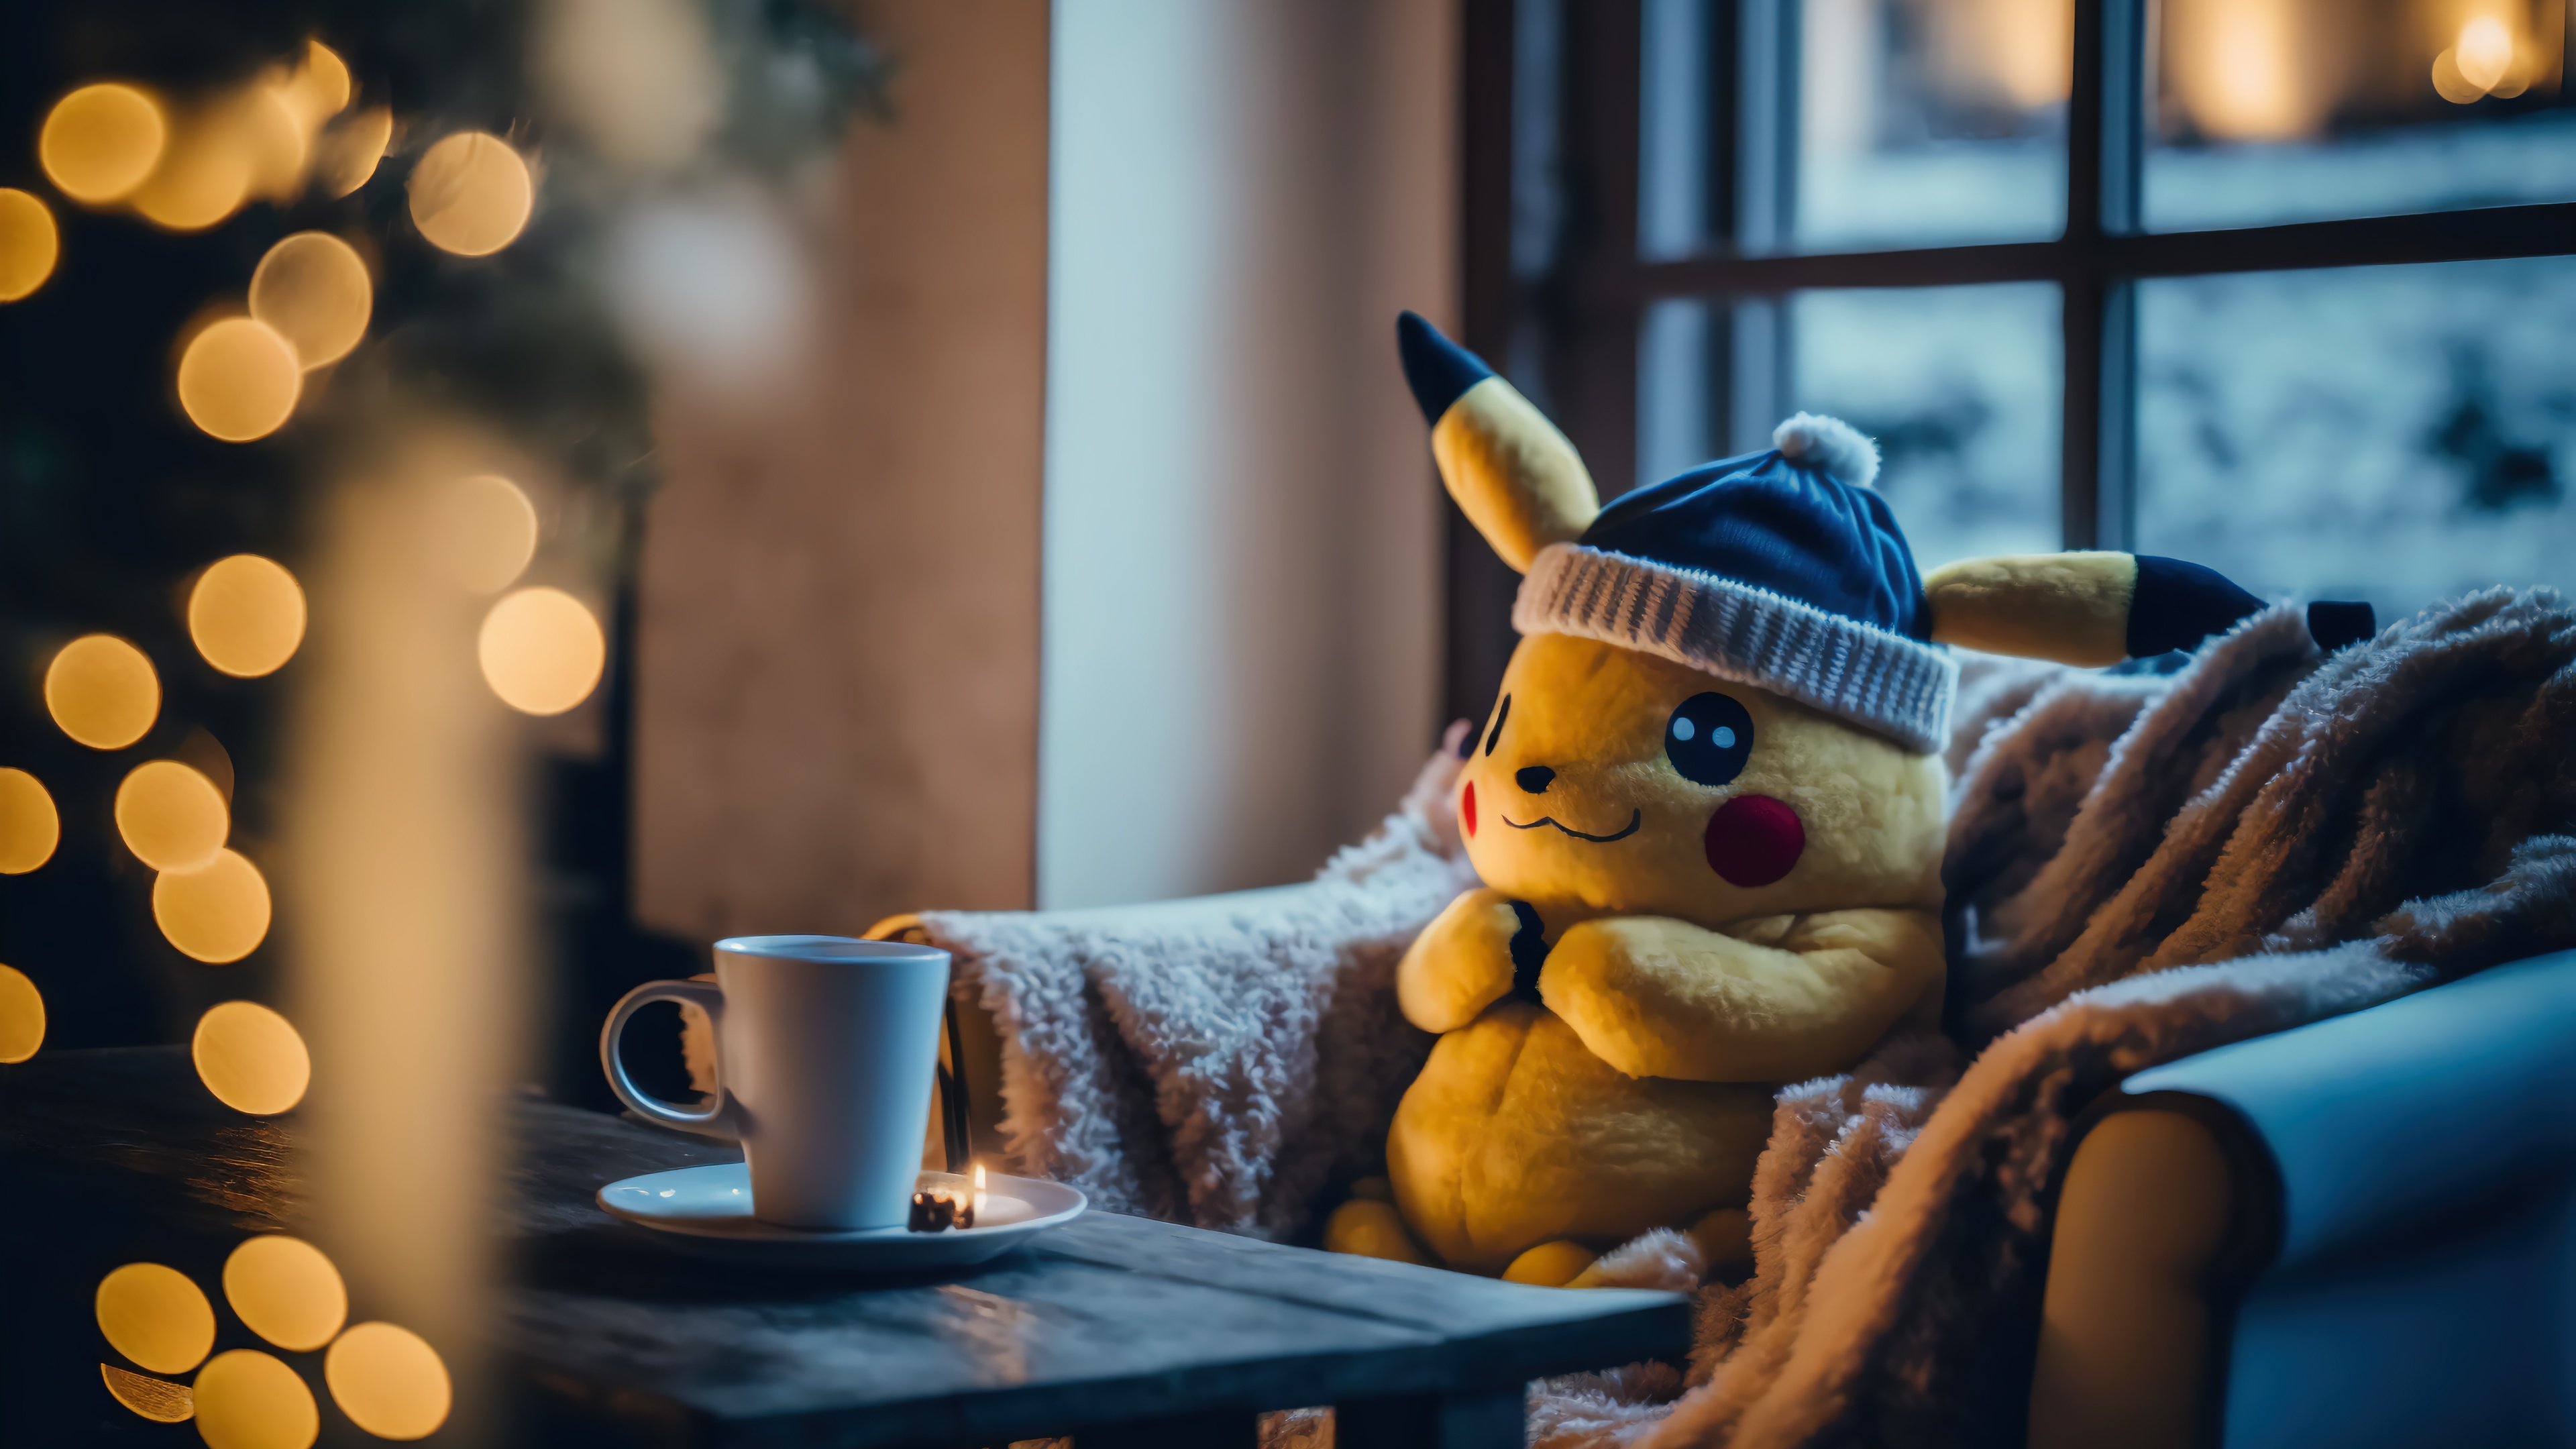 Wallpaper Pikachu at christmas